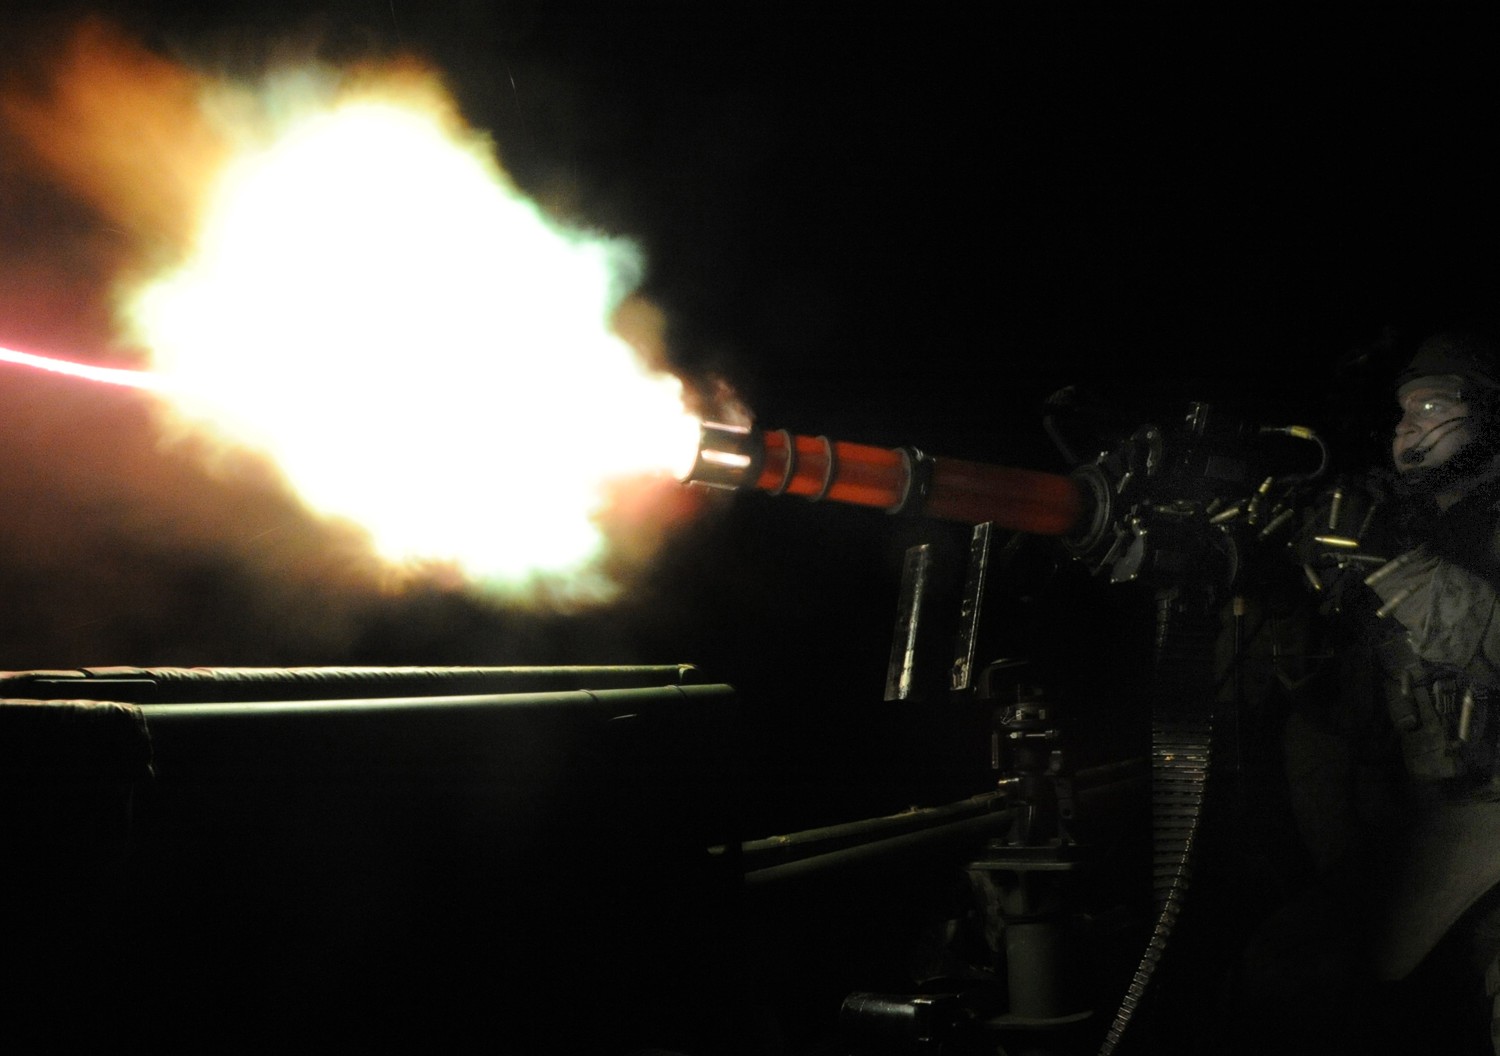 m134 rotary machine gun system six barreled minigun gatling 7,62mm gau-17 24